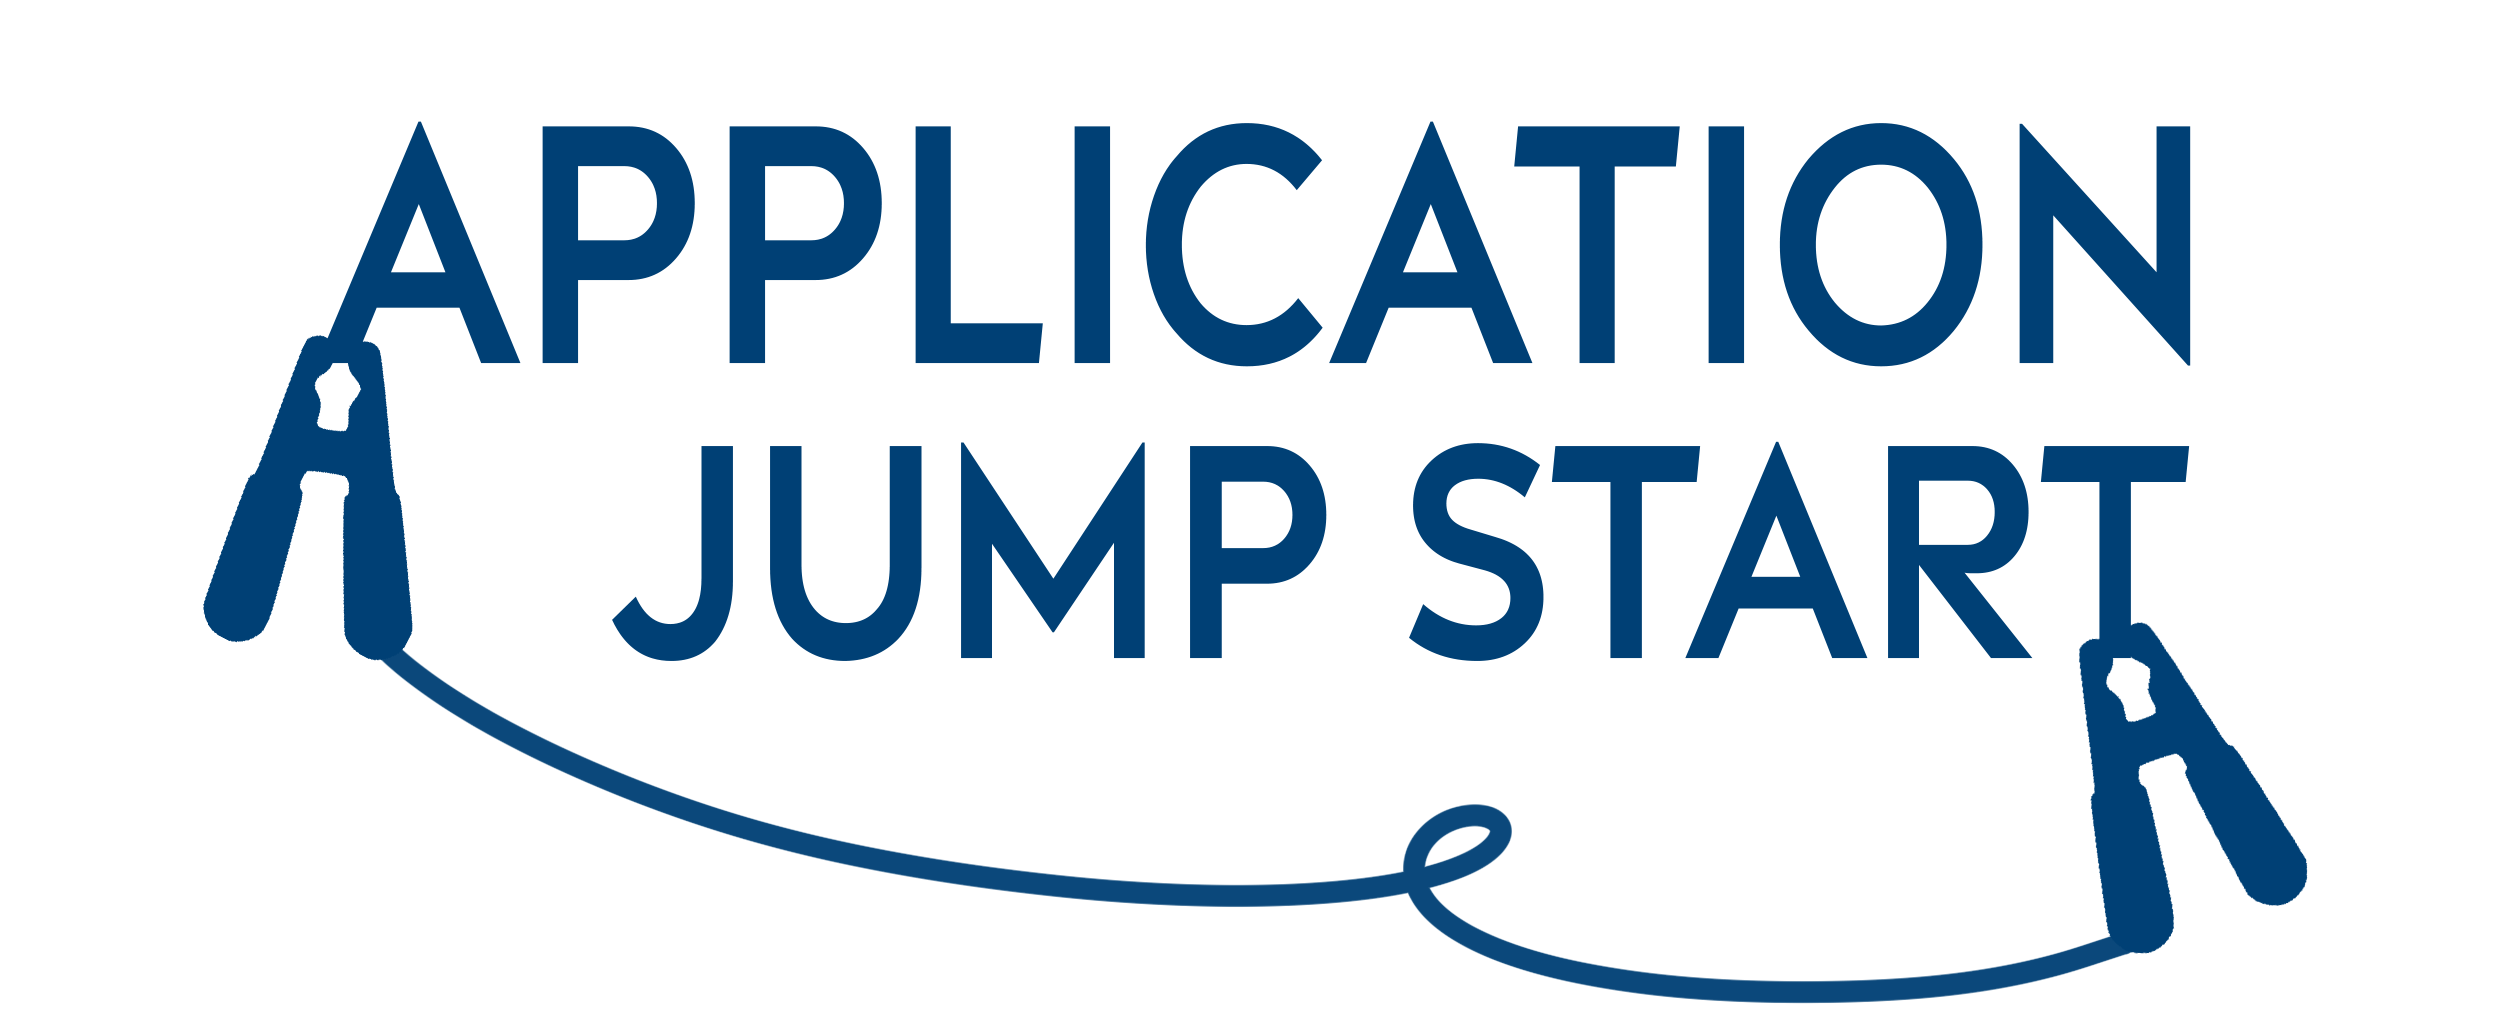 Application Jump Start